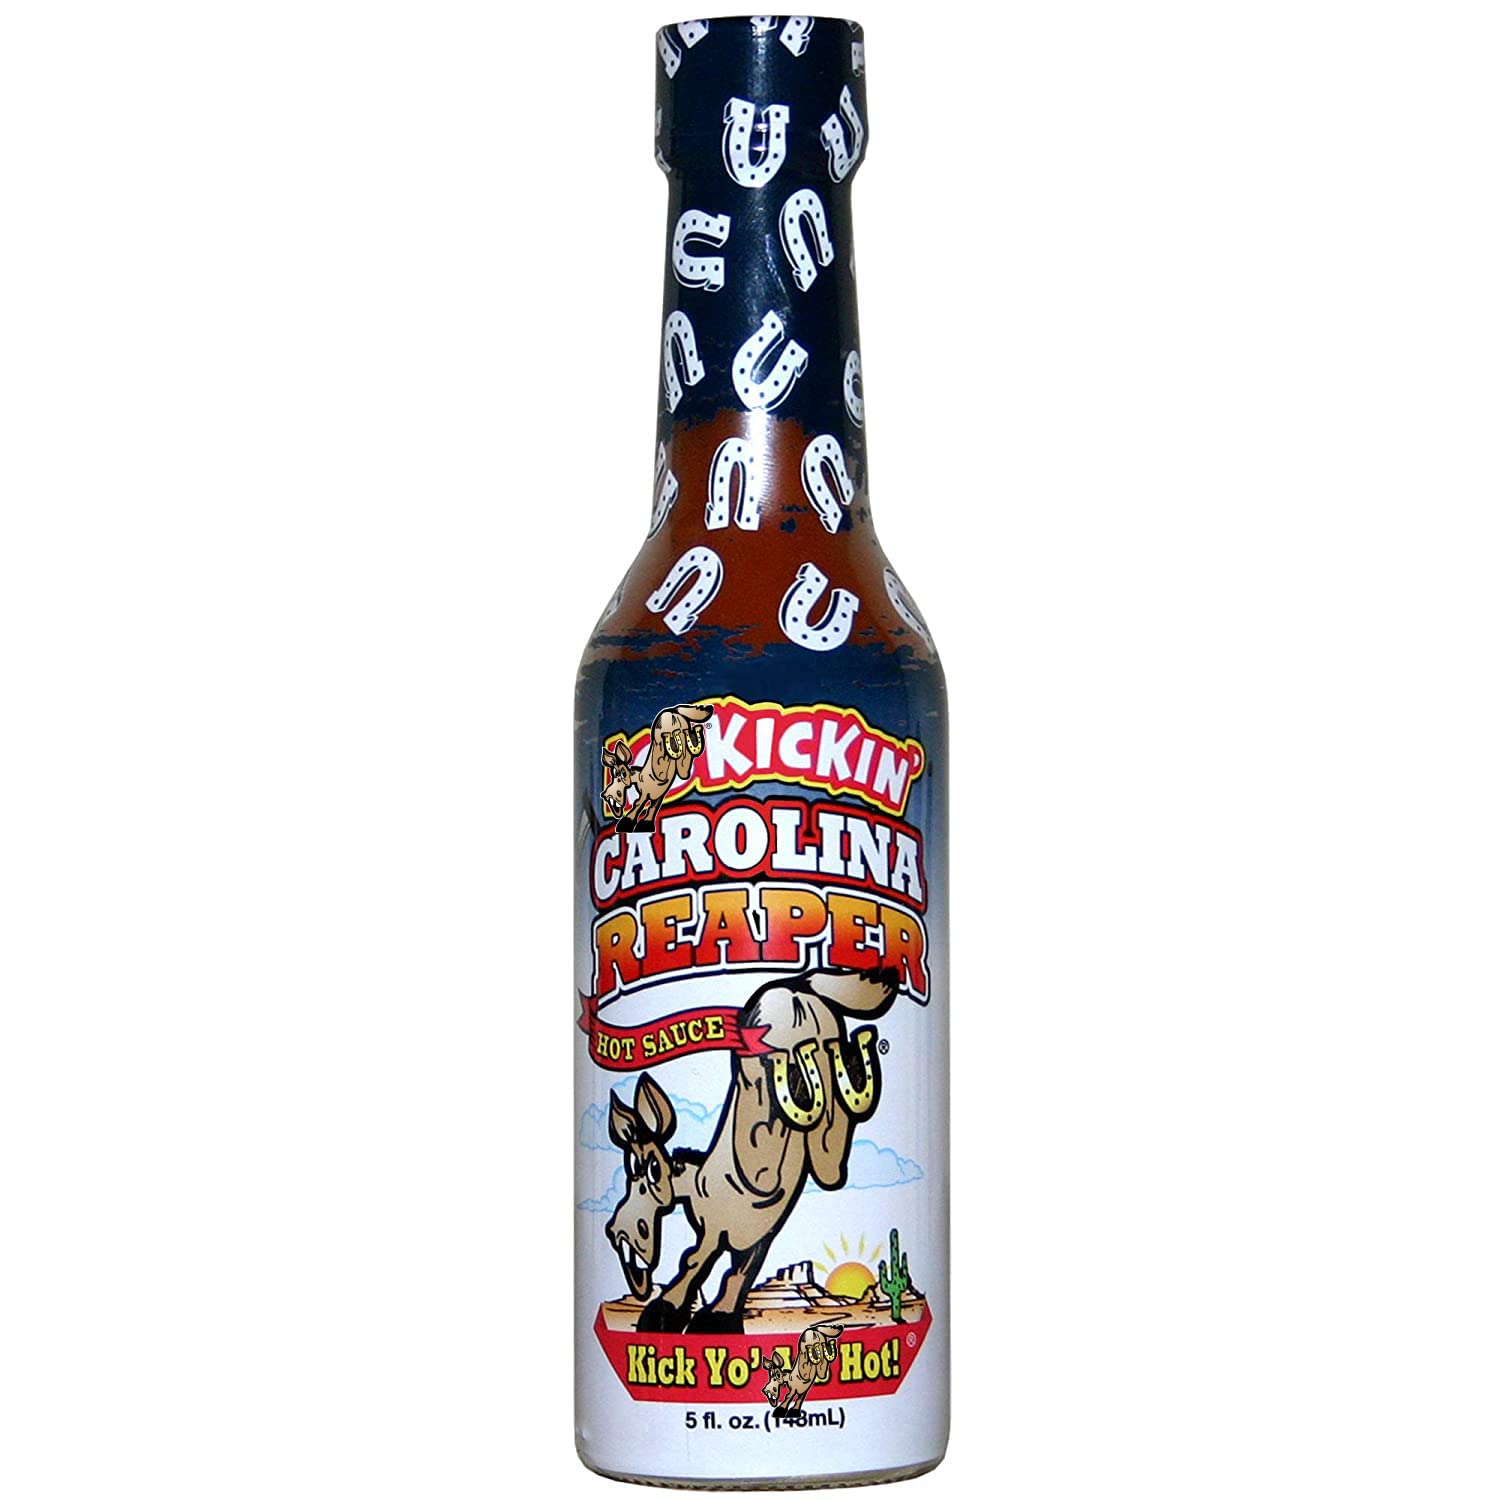 KICKIN' Carolina Reaper Hot Sauce